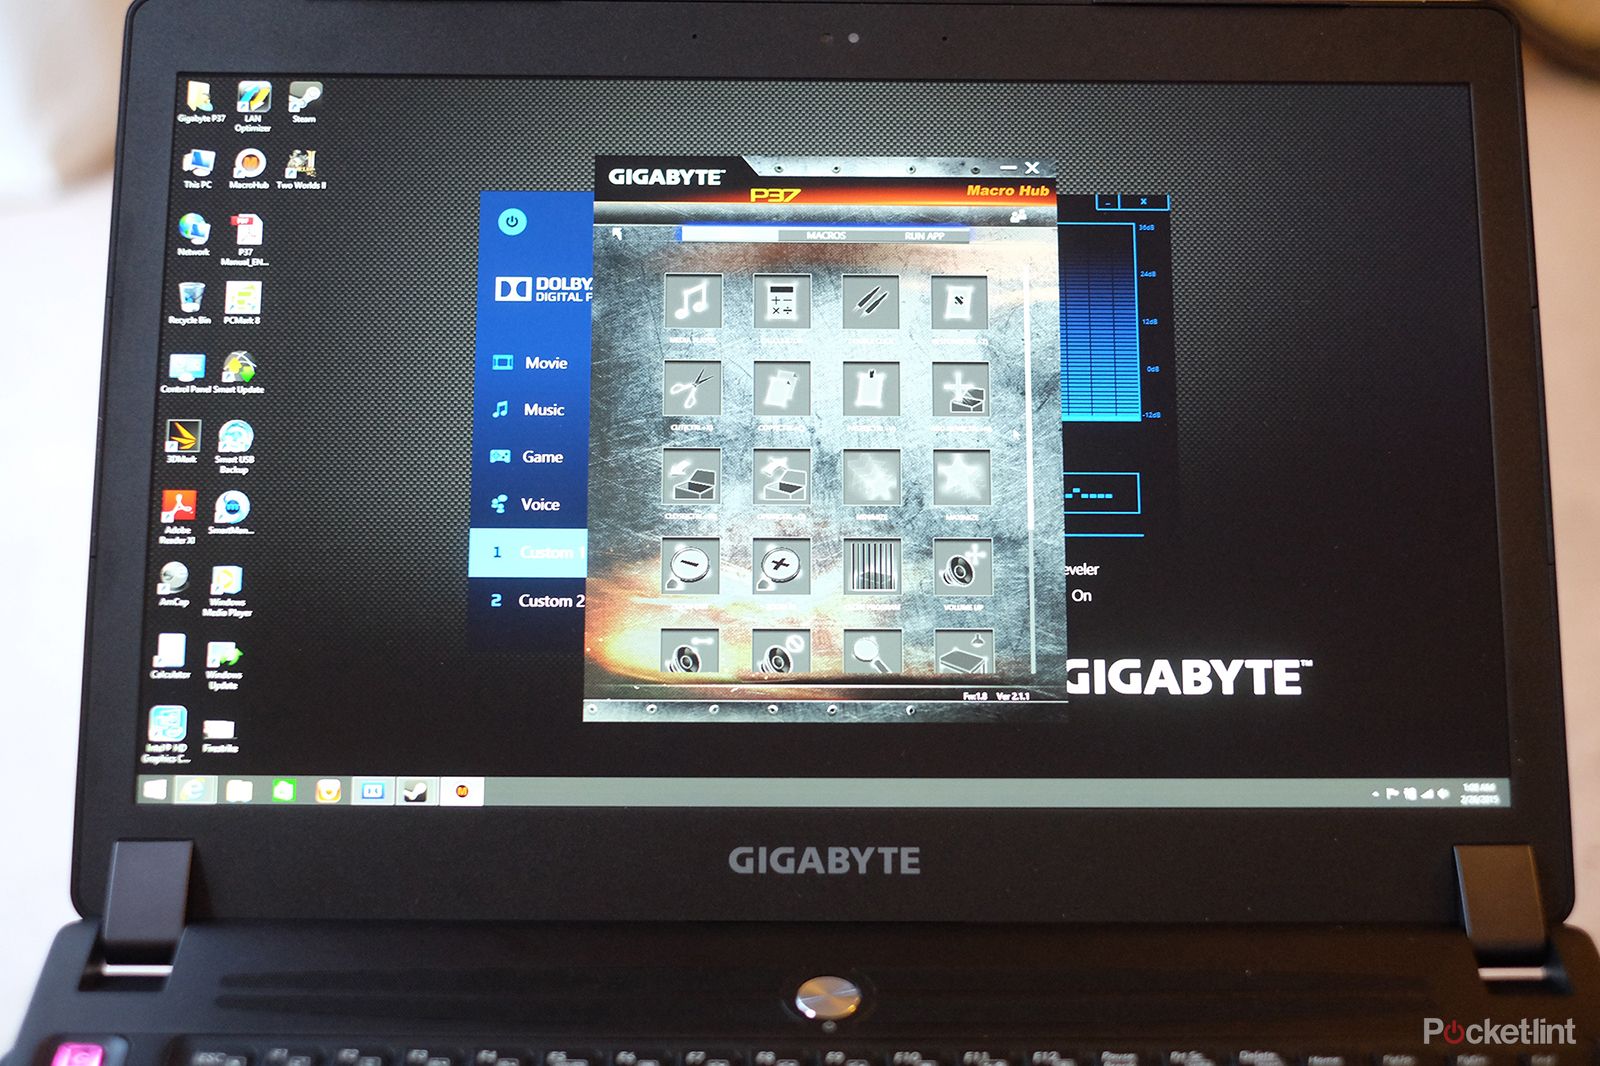 gigabyte p37x v3 review image 12